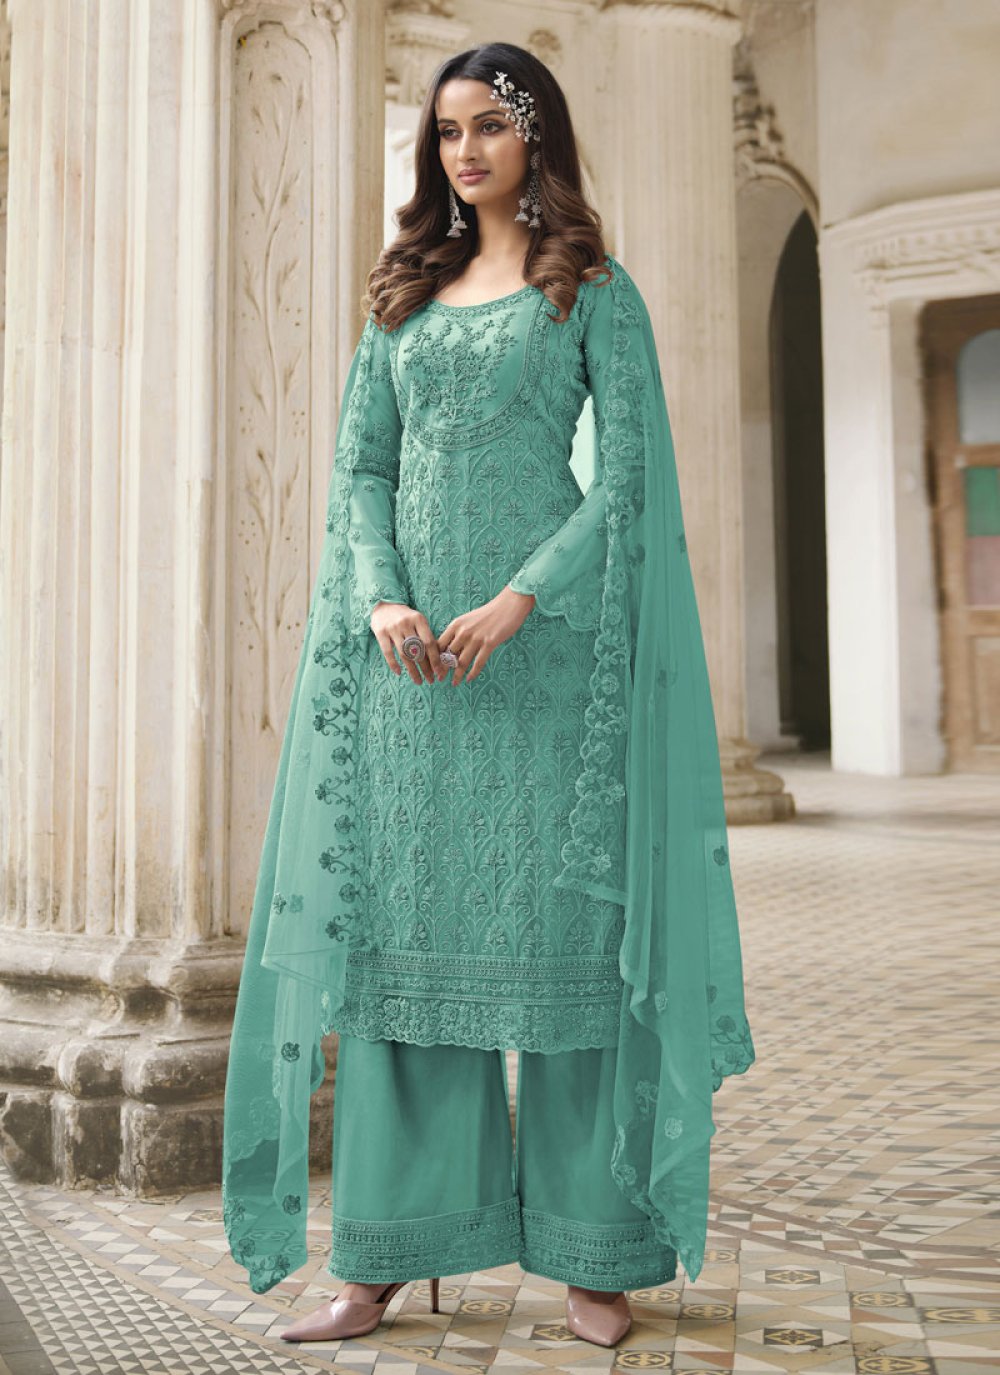 Net Palazzo Style Pakistani Salwar Suit